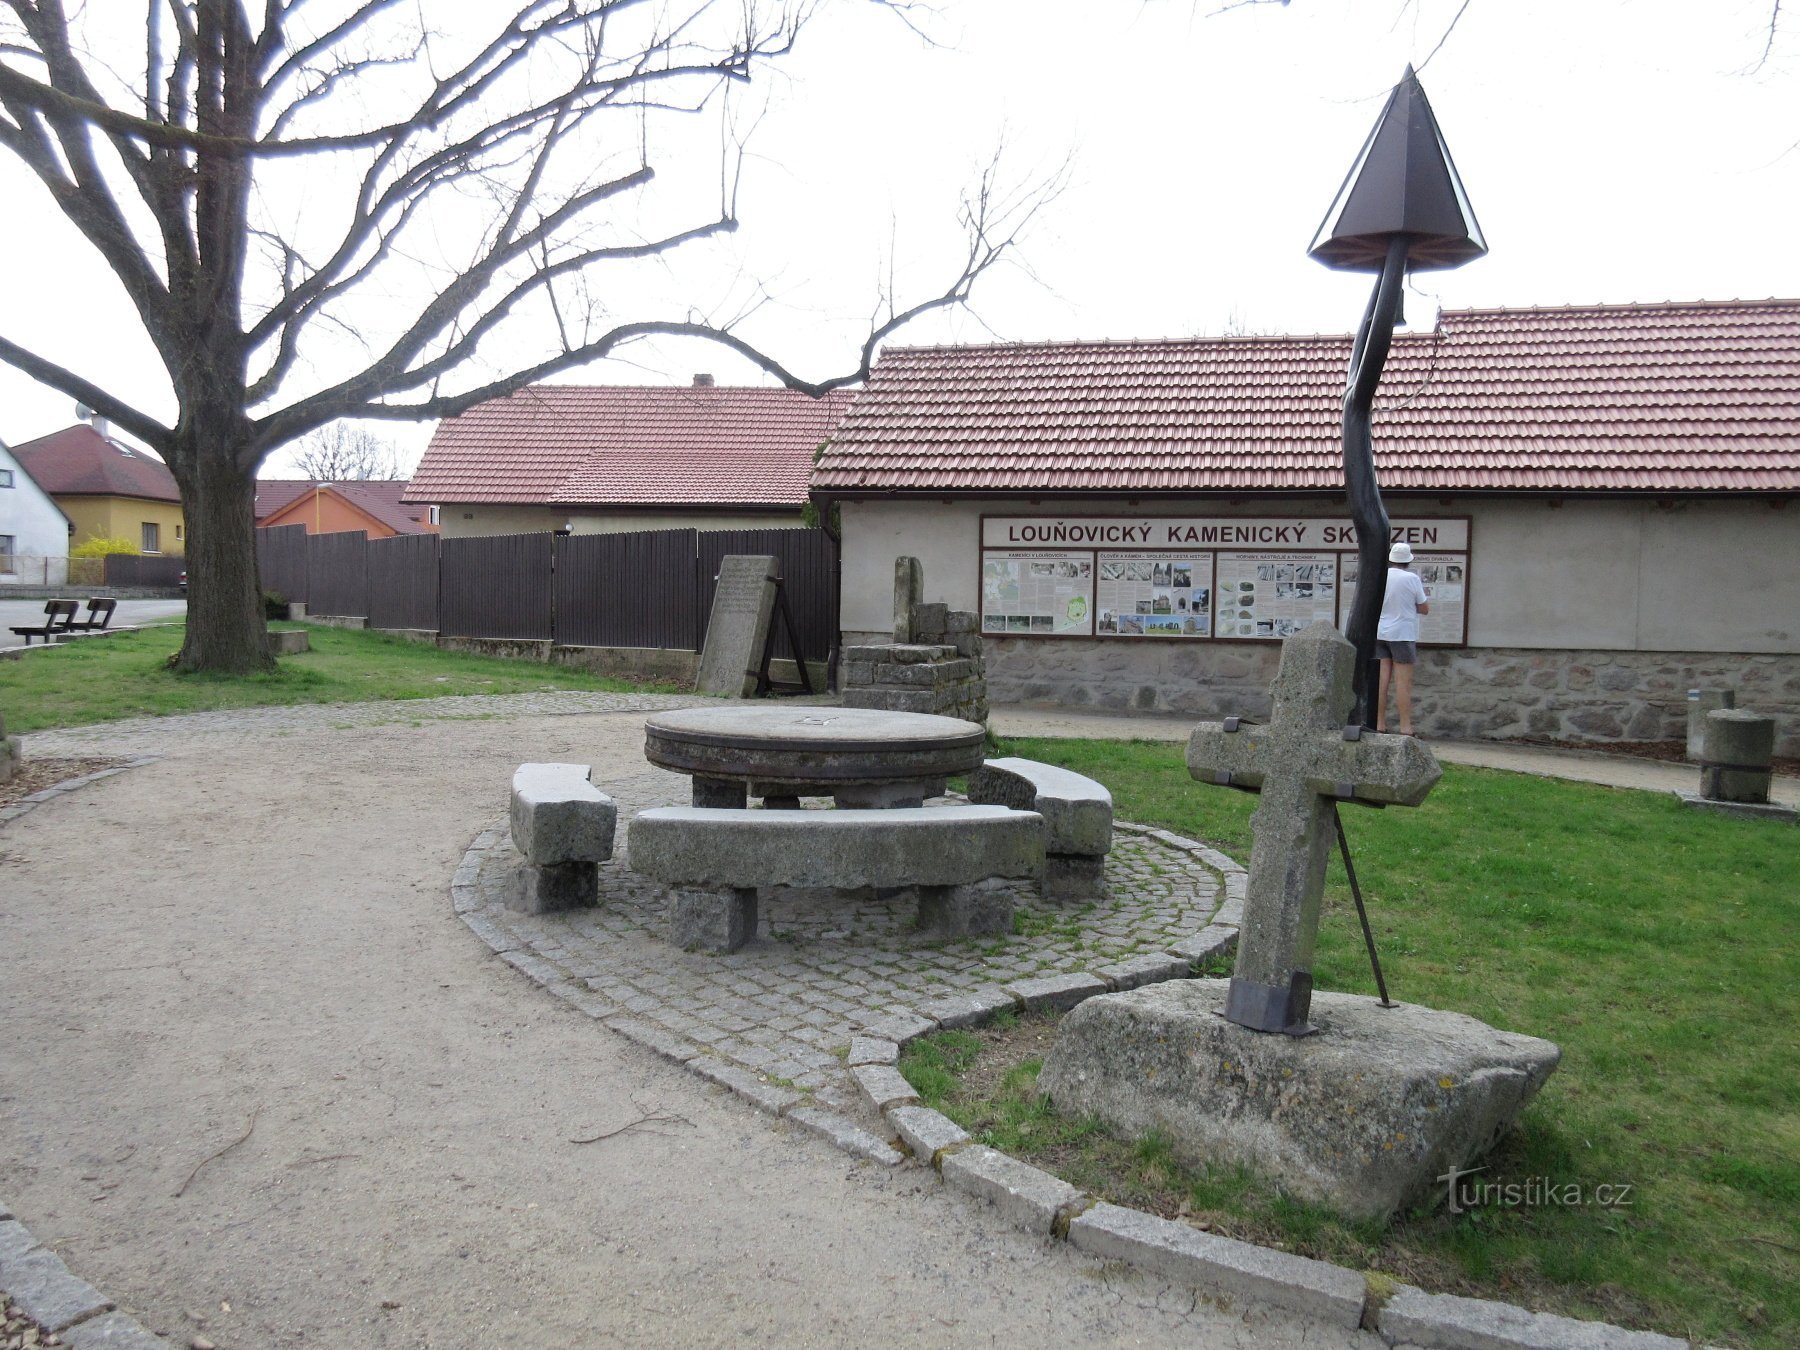 ロウニョヴィツェ – カメニツェ野外博物館と教育トレイル